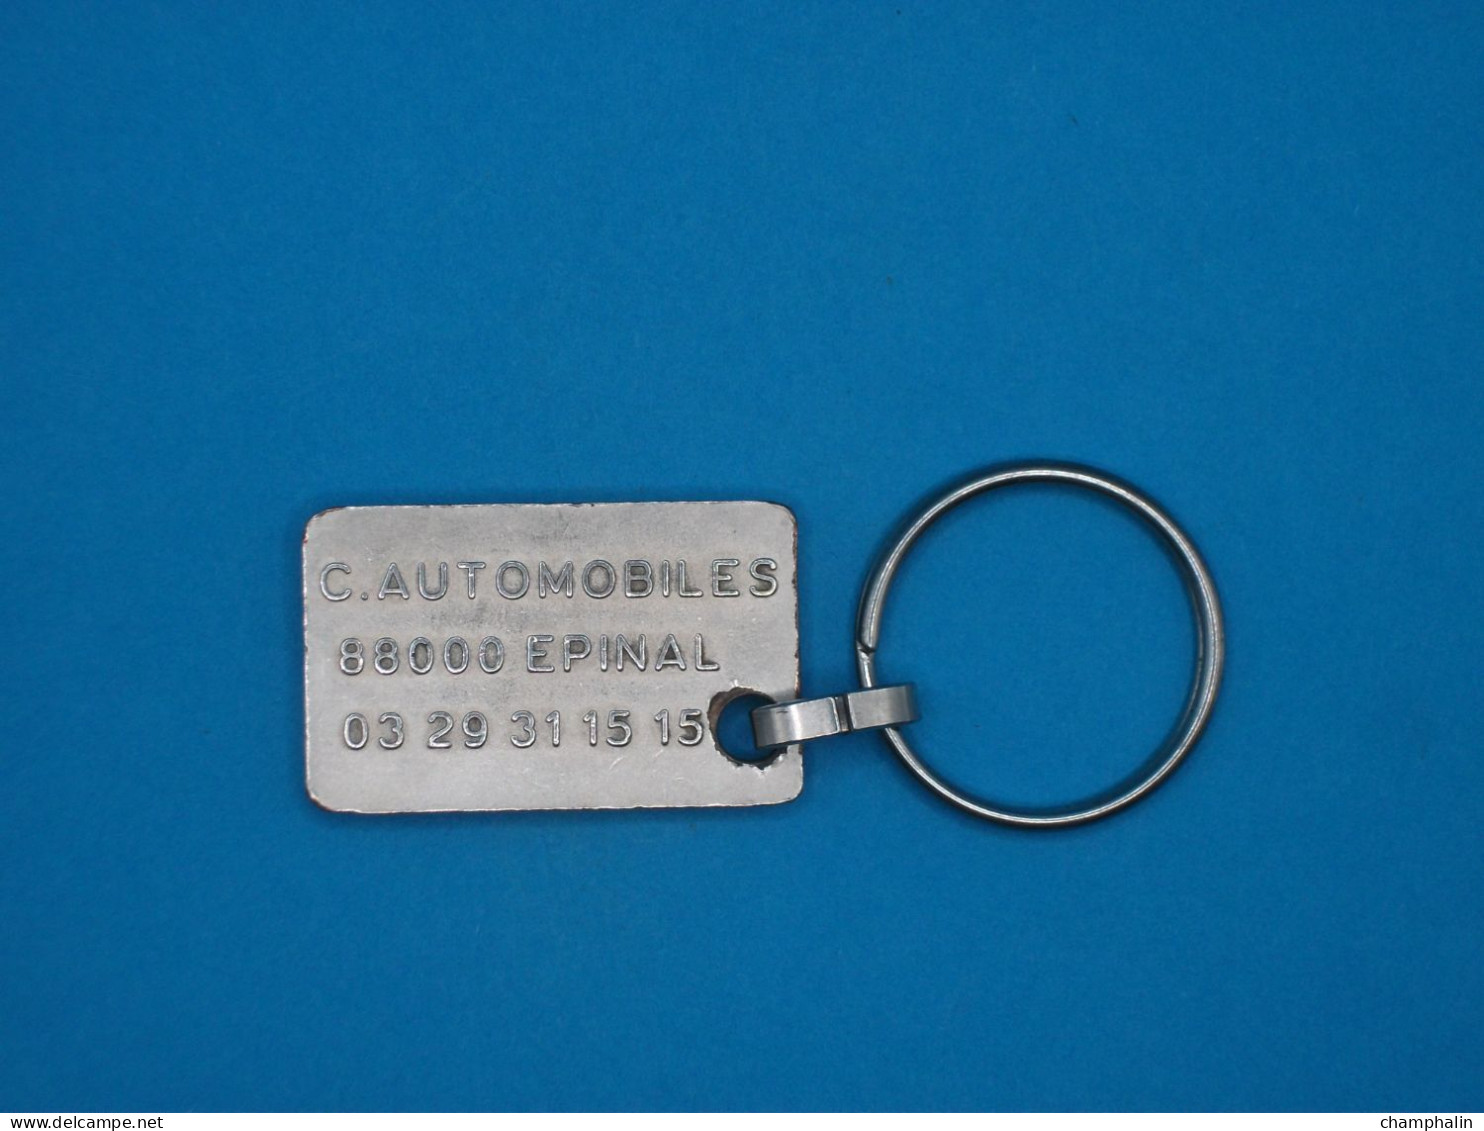 Porte-clé Métal - Citroën C. Automobiles à Epinal (88) - Voiture Concessionnaire Garage - Key-rings